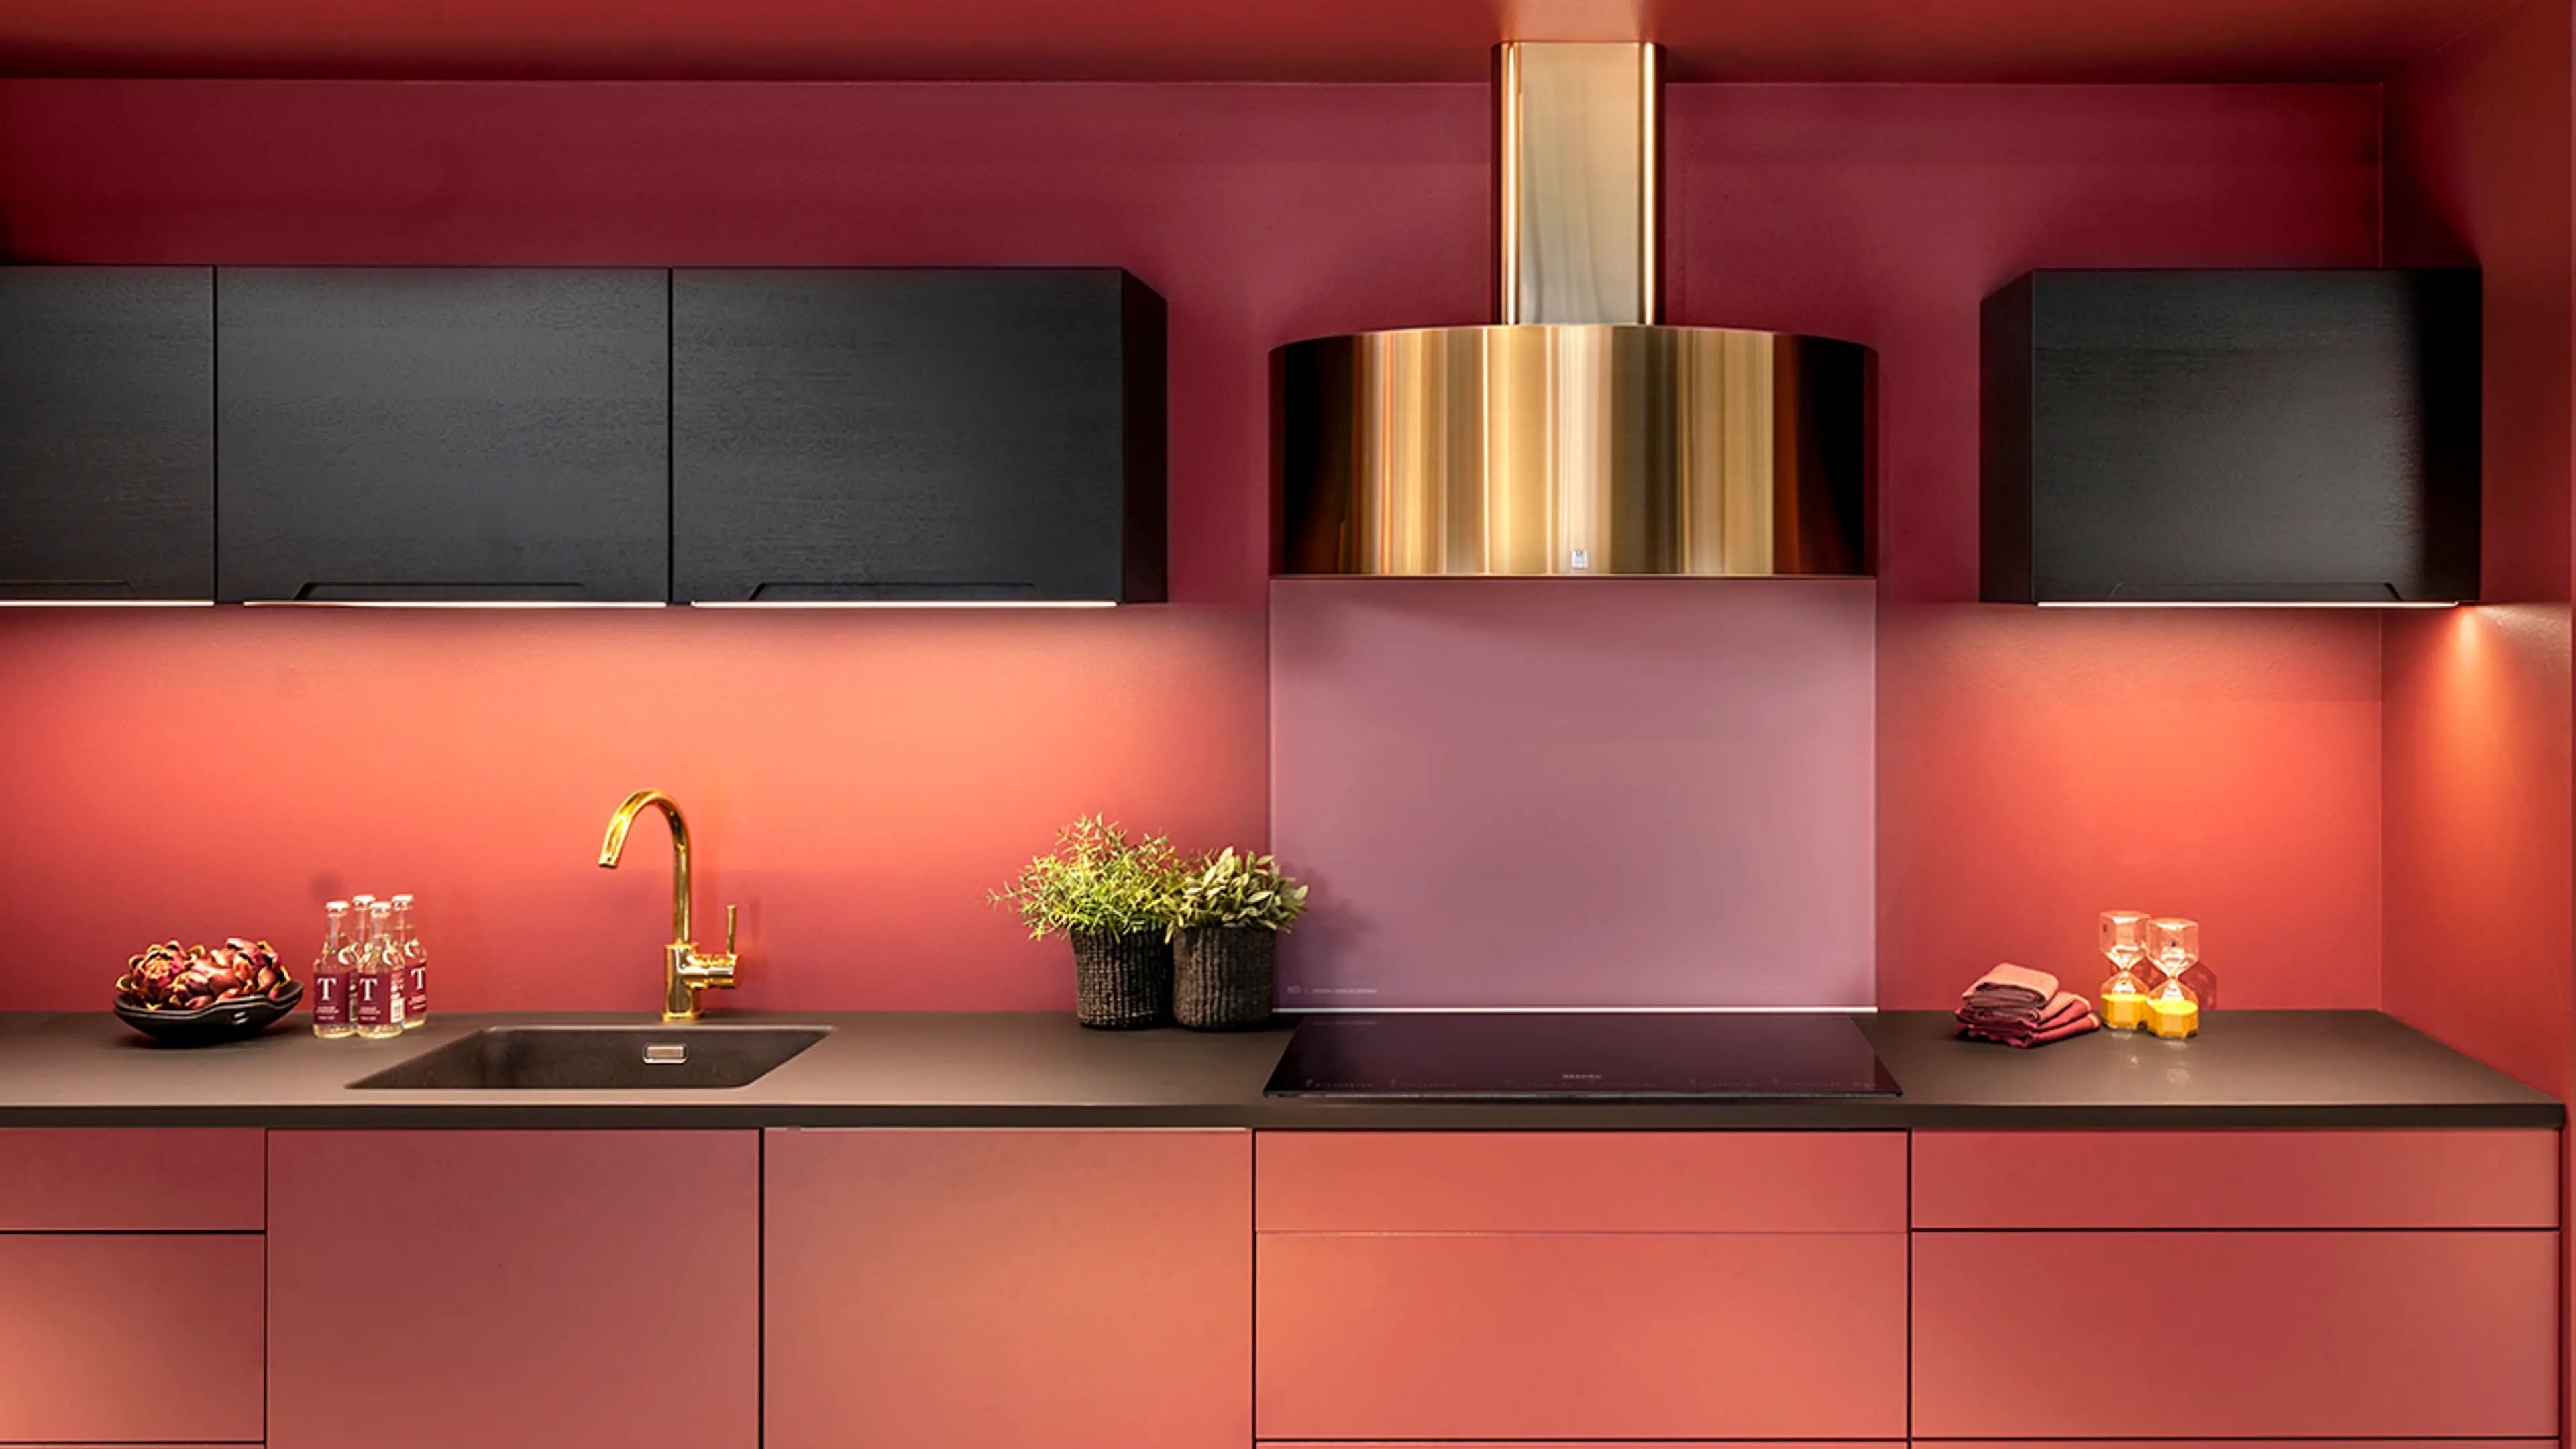 Kjøkkenhette i kobber fra RørosHetta på rødt kjøkken med sorte og rosa detaljer.